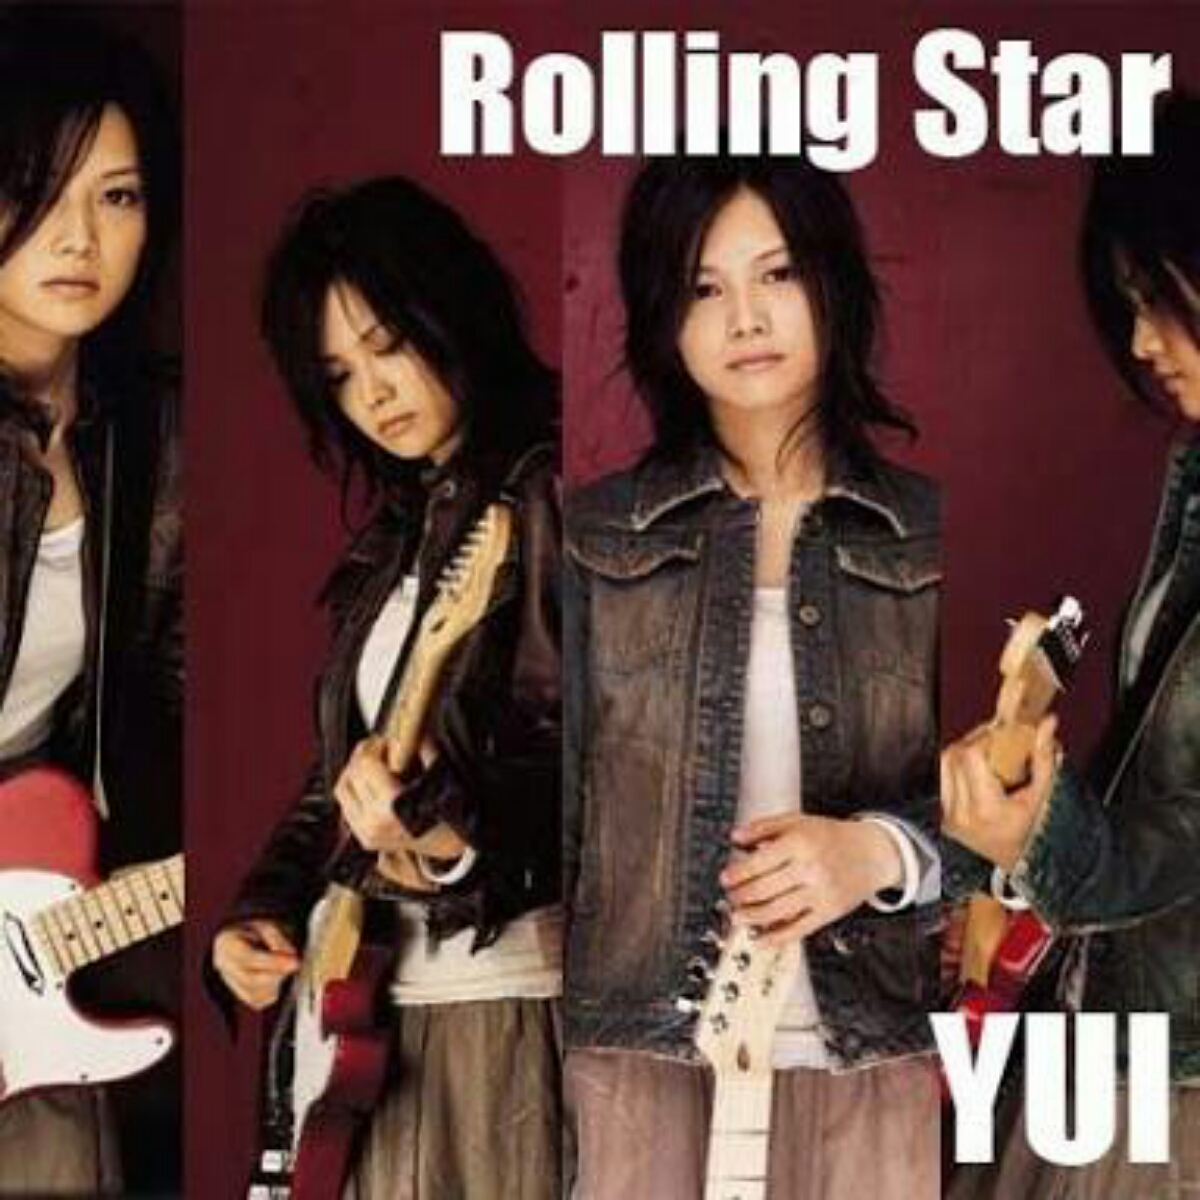 YUI - Rolling star